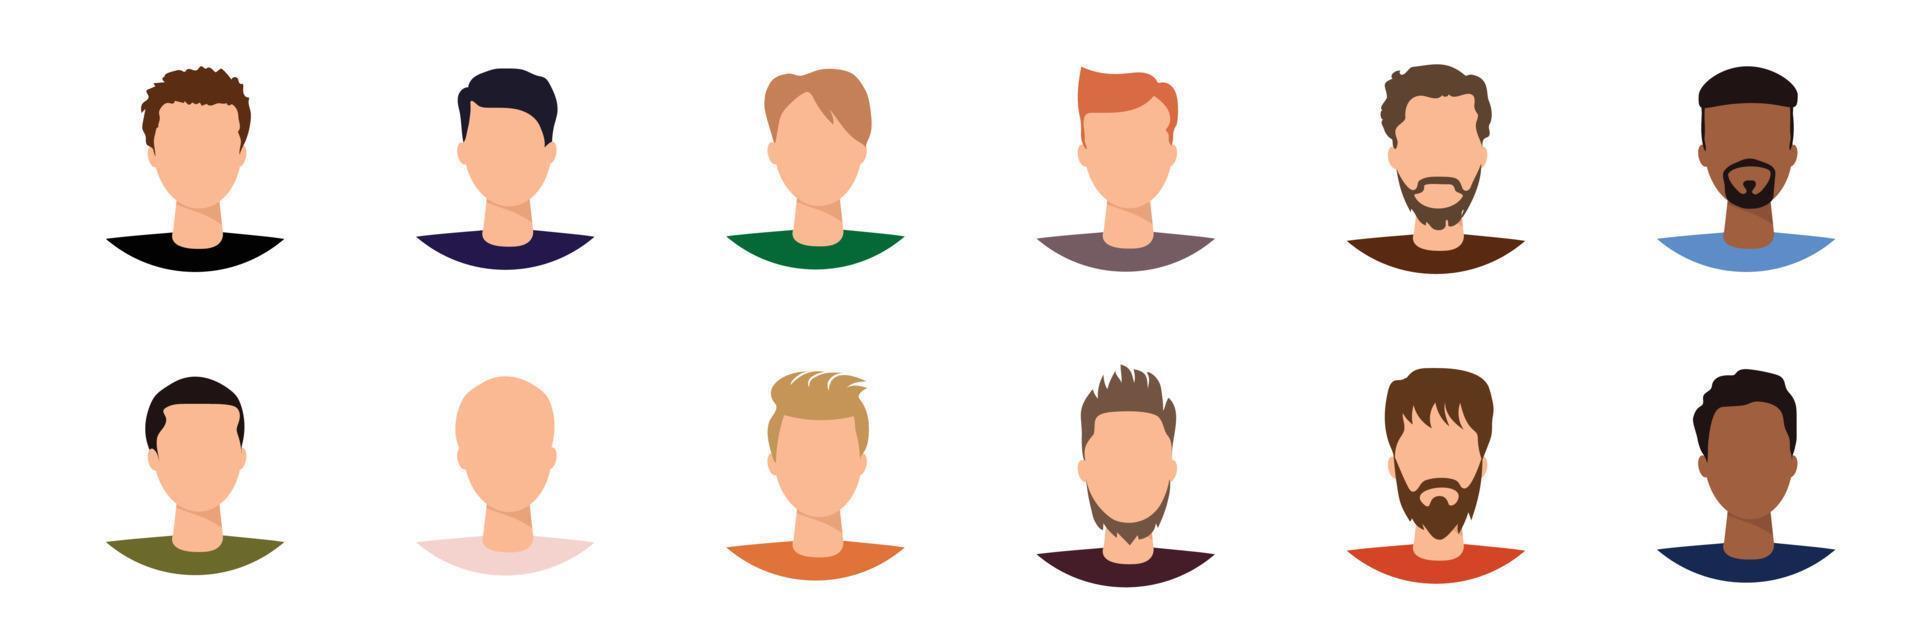 establecer avatar, hombres sin rostro. ilustración vectorial vector